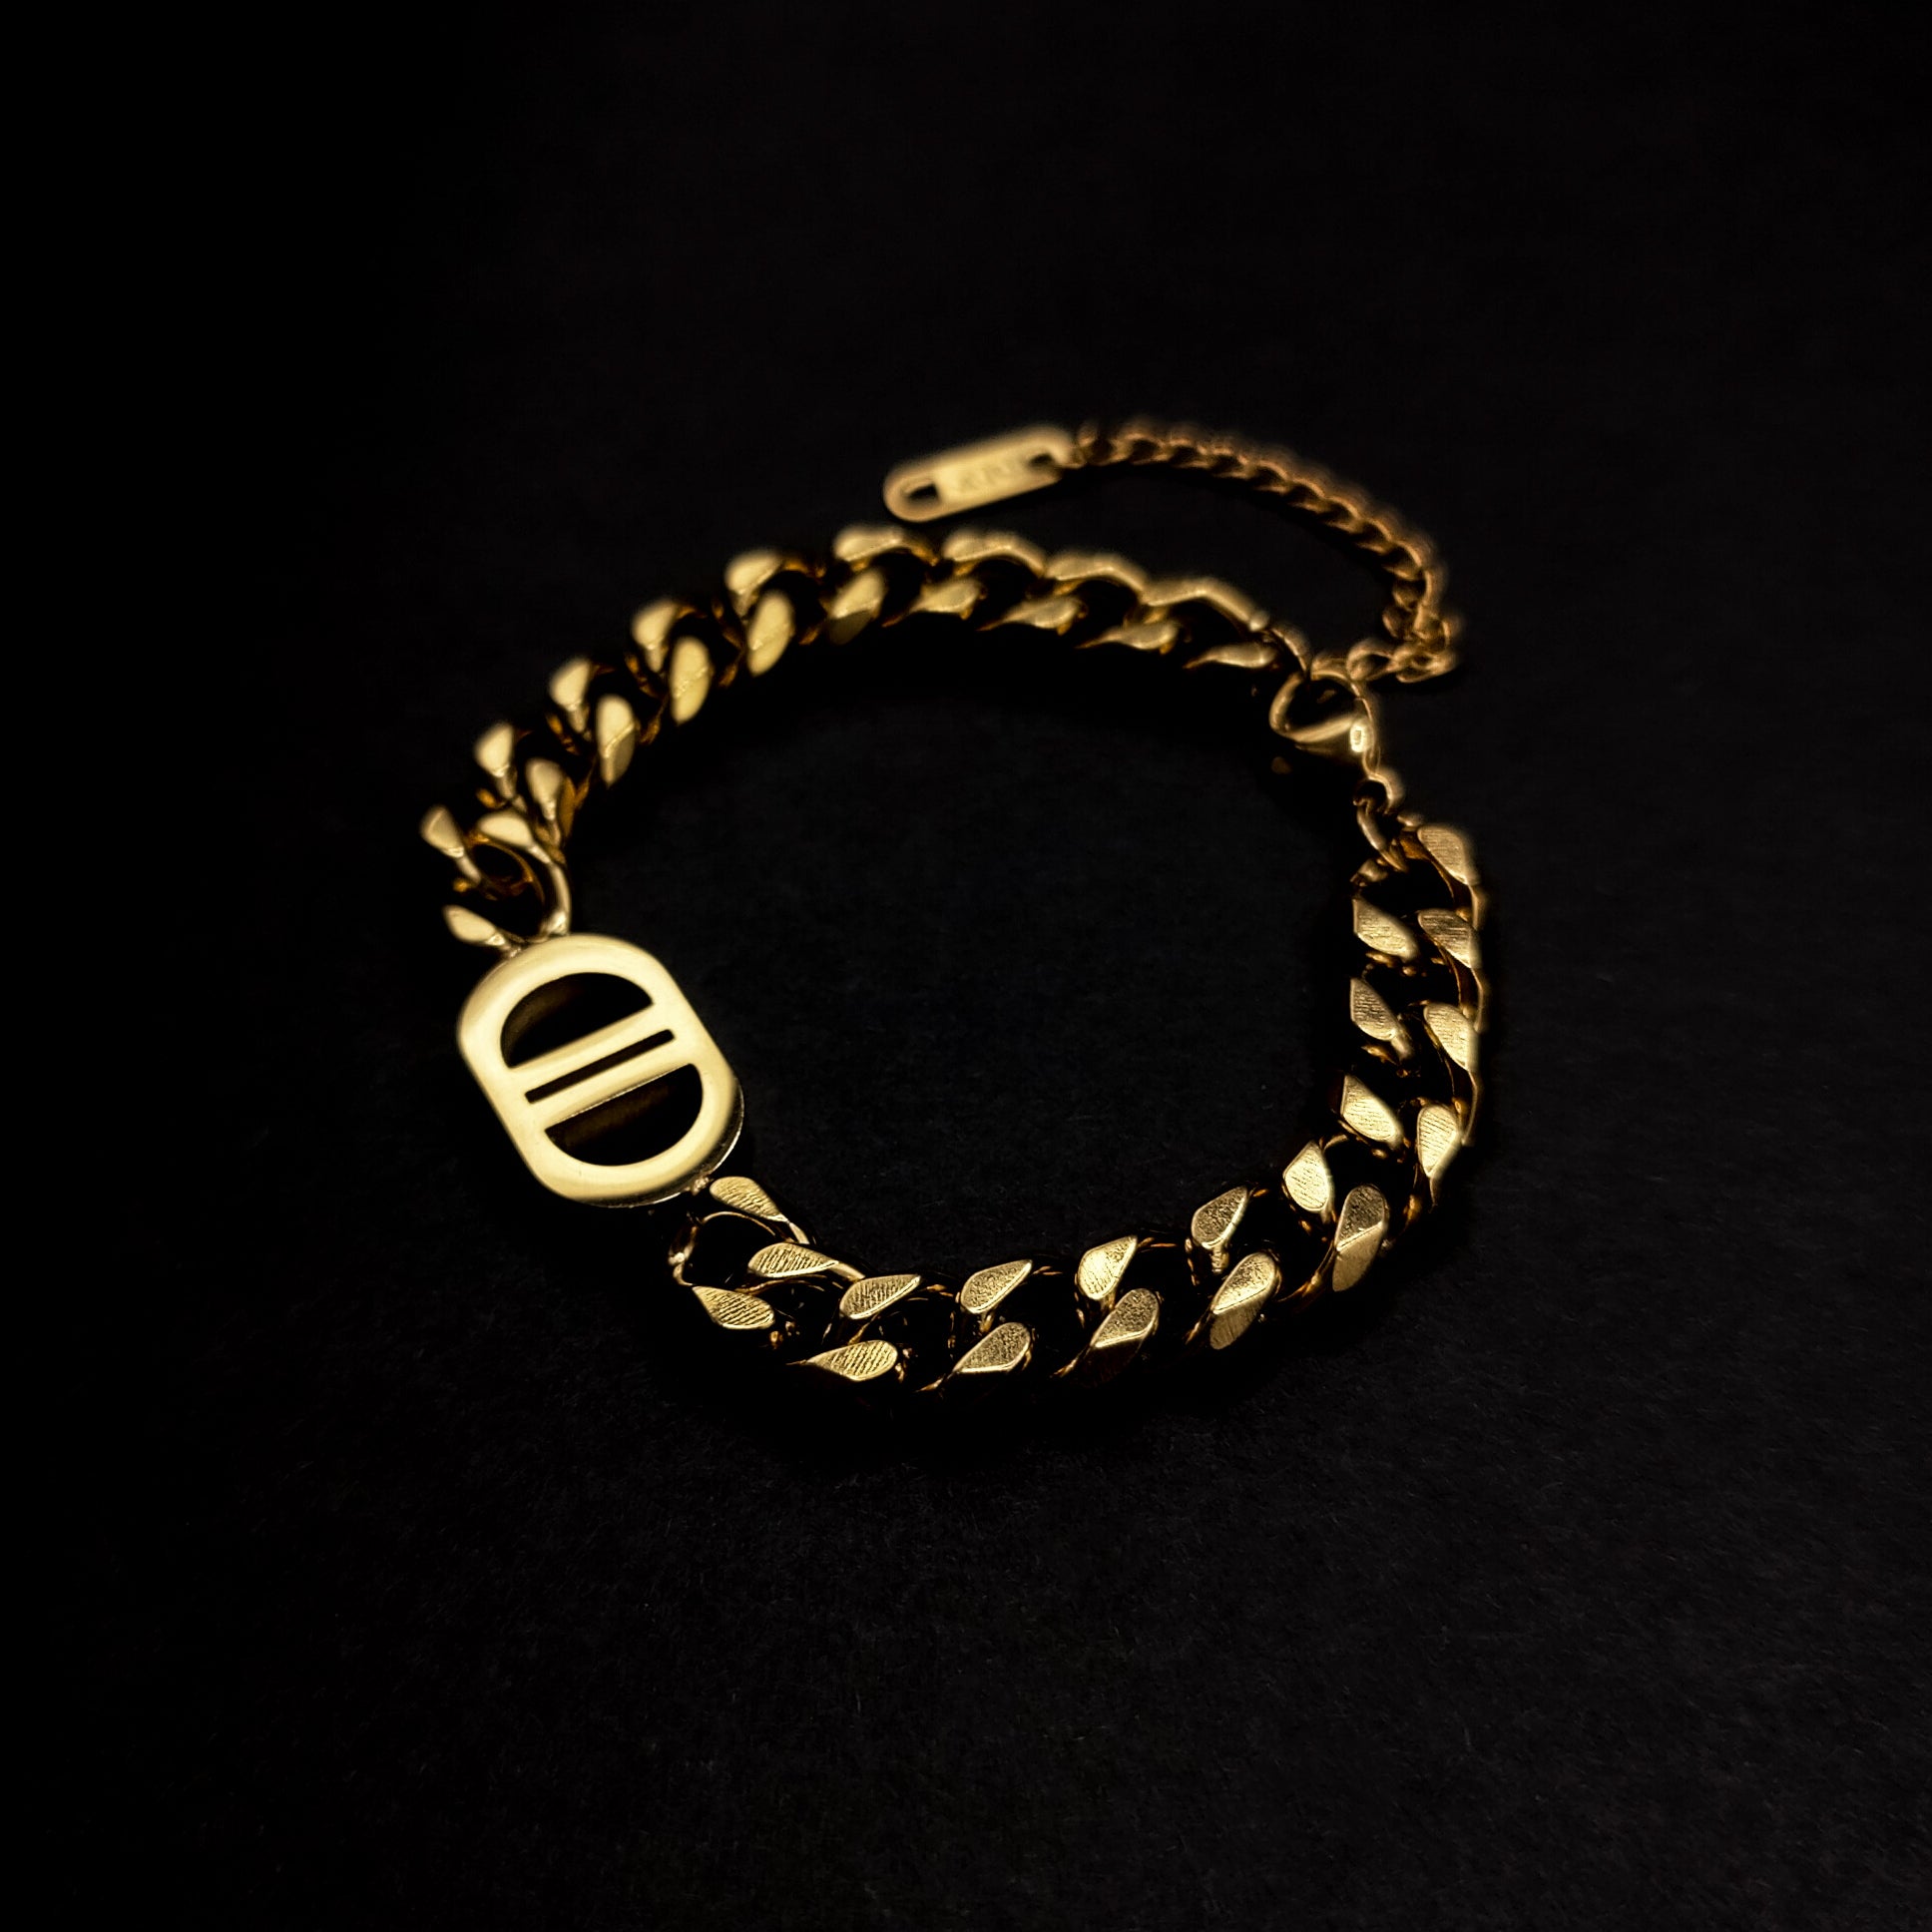 Vintage 18K Gold Twist Open Link Bracelet